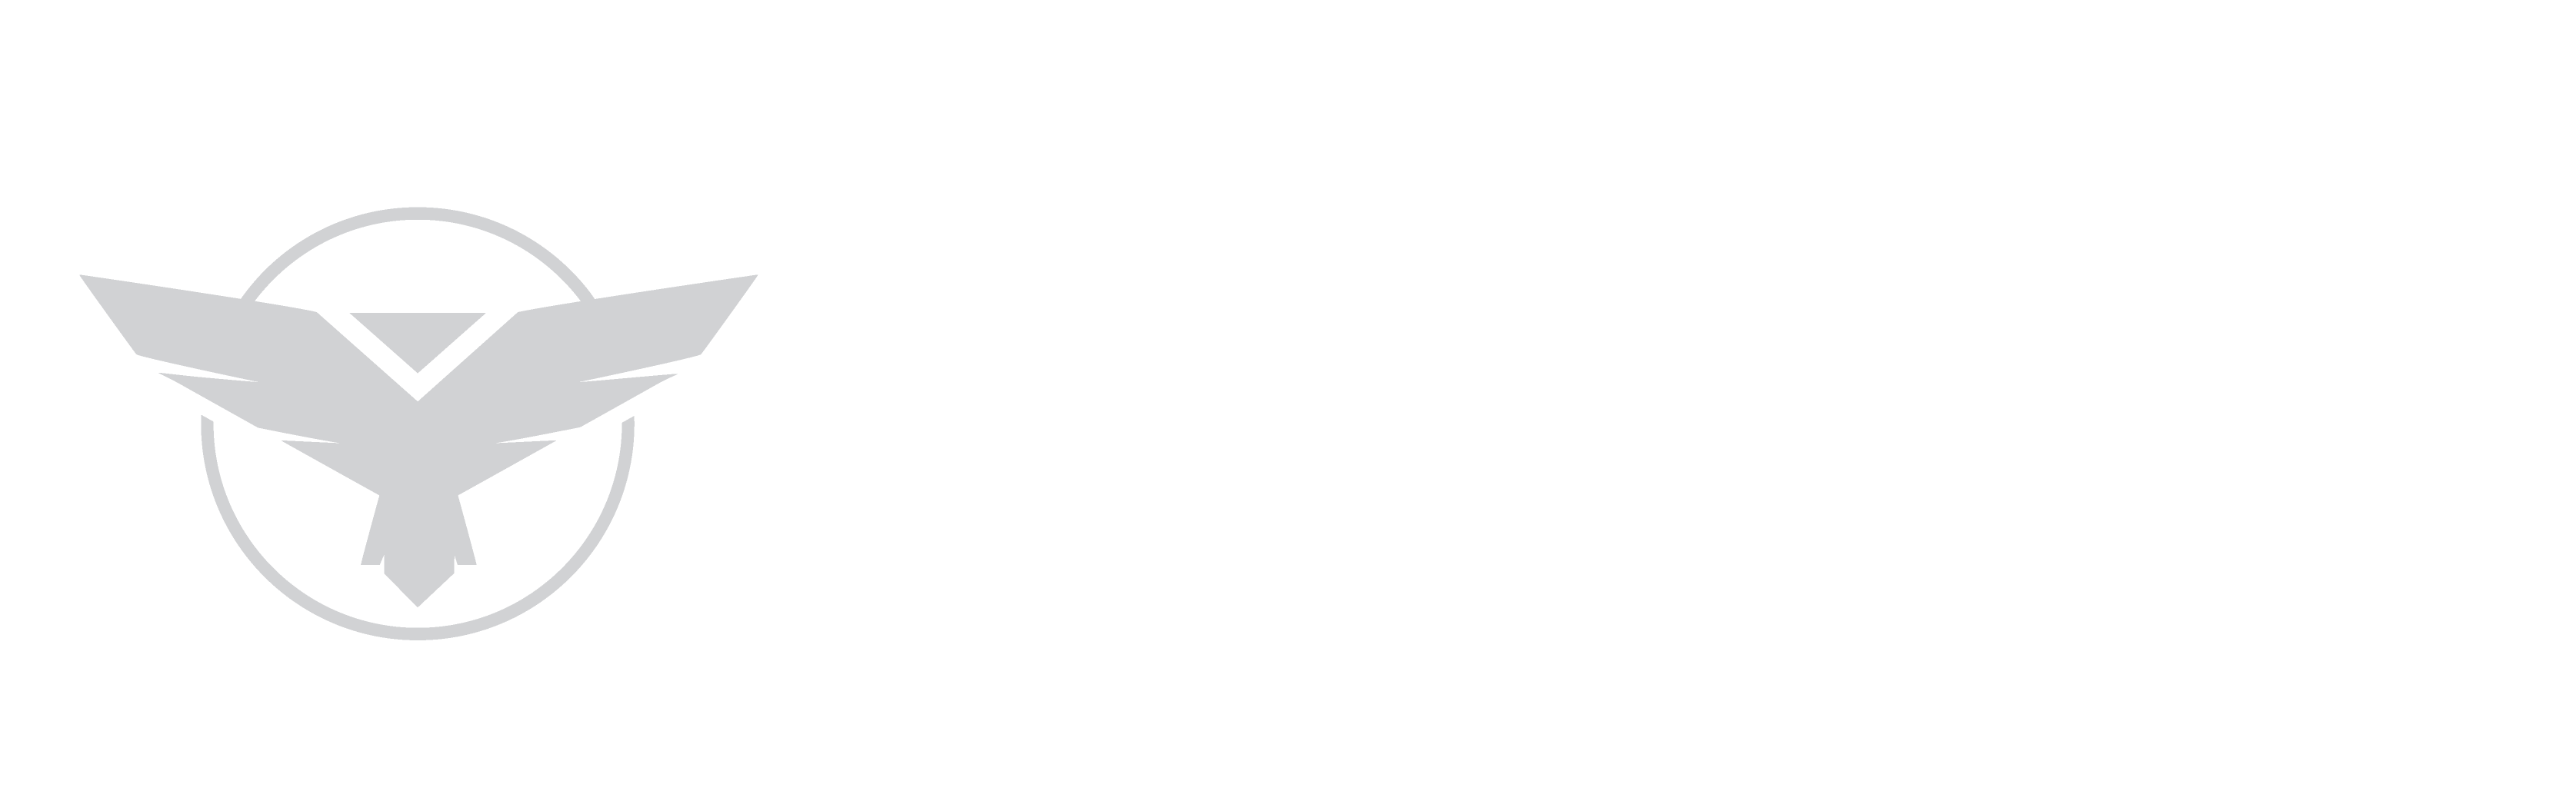 GRAB Security